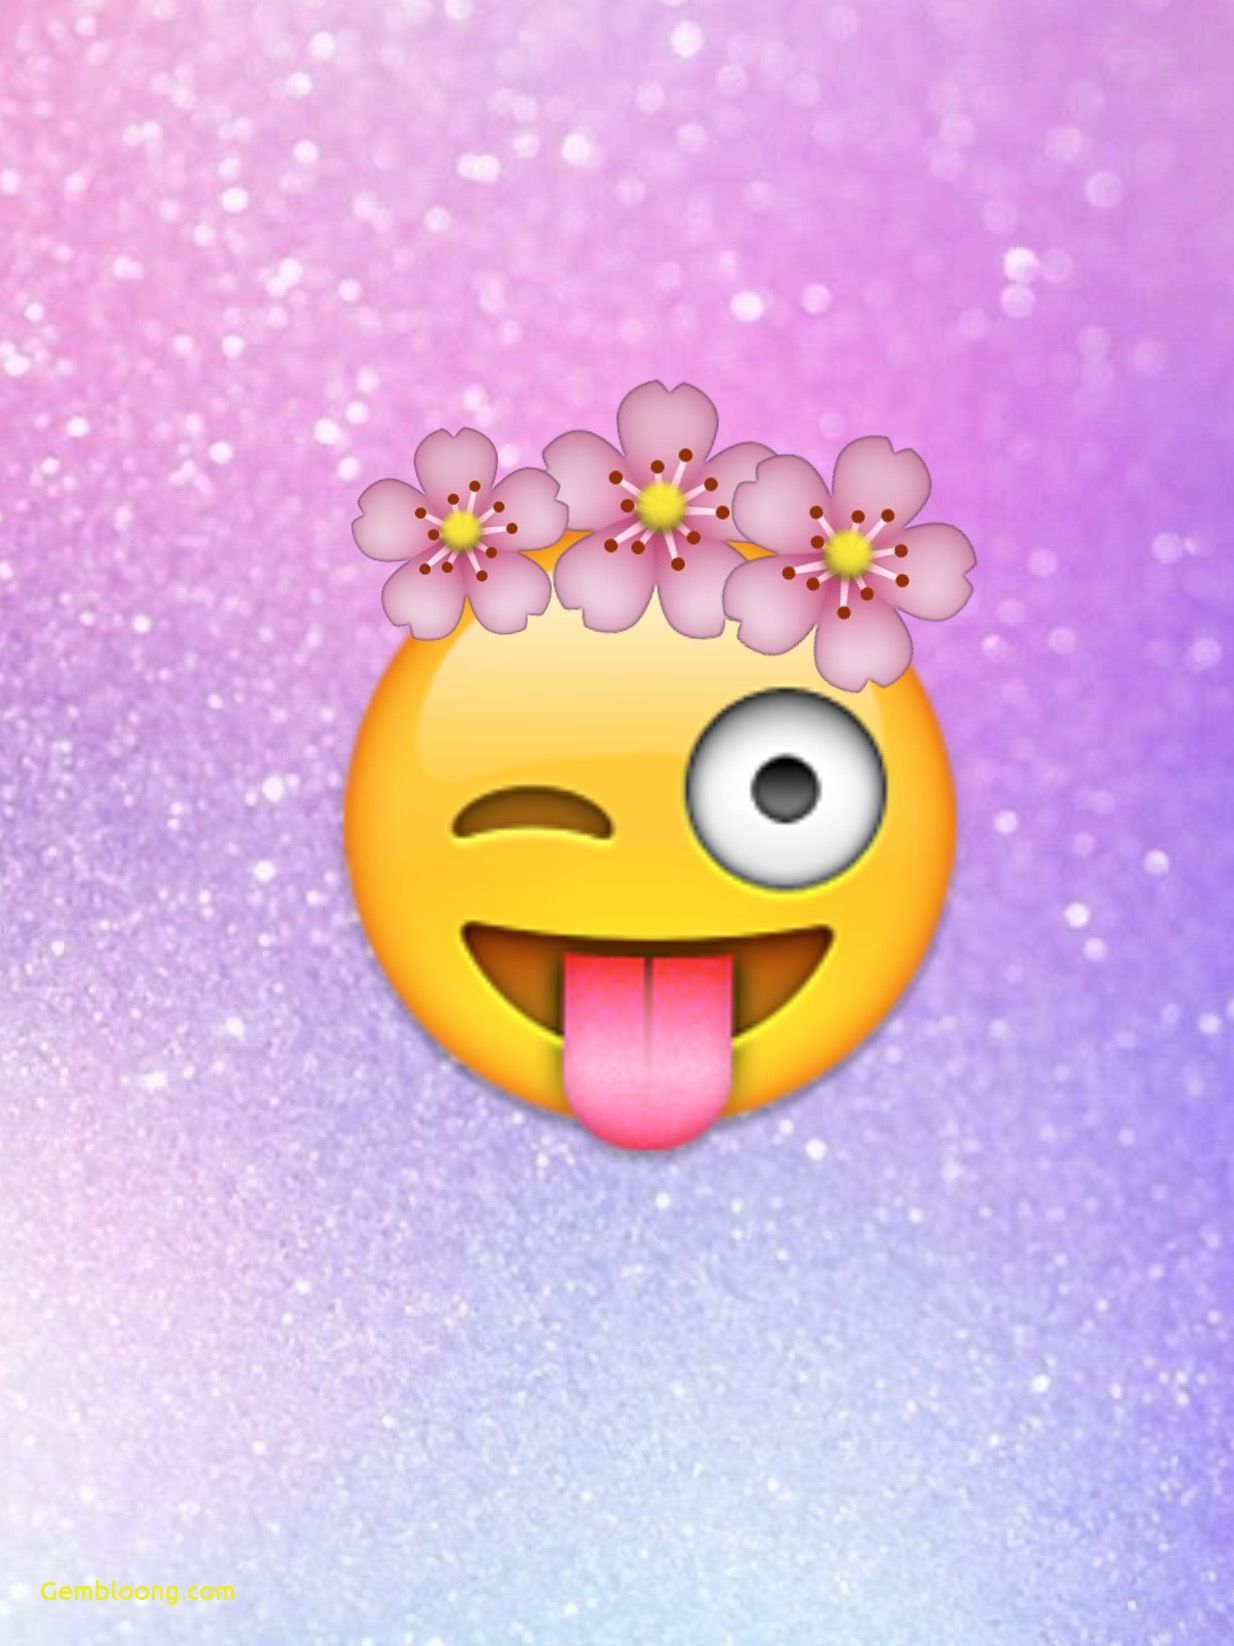 Cute Emoji Wallpaper Free Cute Emoji Background